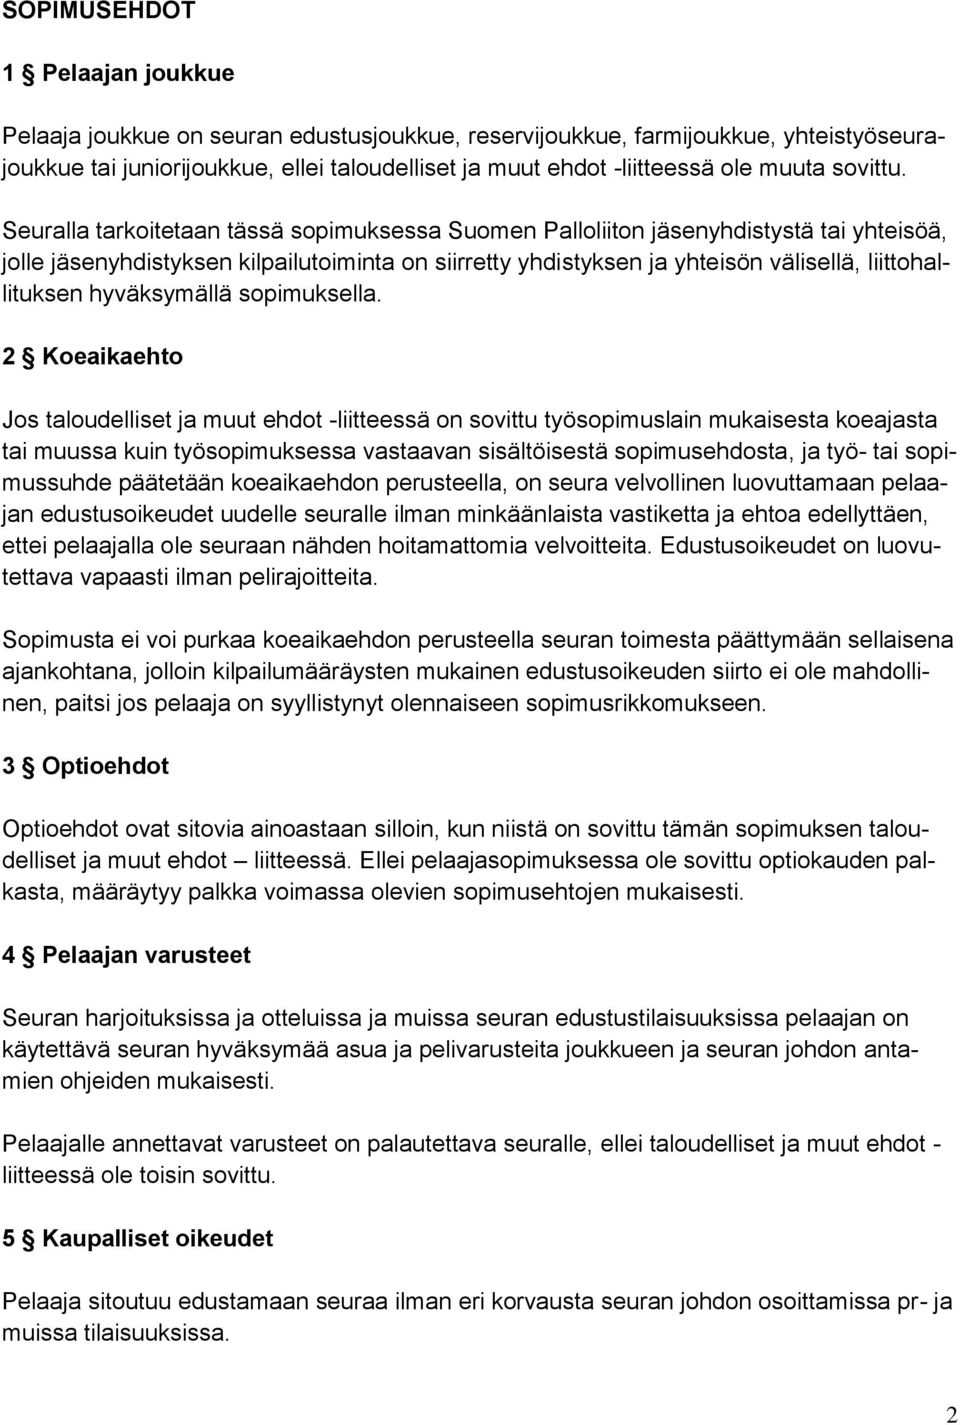 Seuralla tarkoitetaan tässä sopimuksessa Suomen Palloliiton jäsenyhdistystä tai yhteisöä, jolle jäsenyhdistyksen kilpailutoiminta on siirretty yhdistyksen ja yhteisön välisellä, liittohallituksen